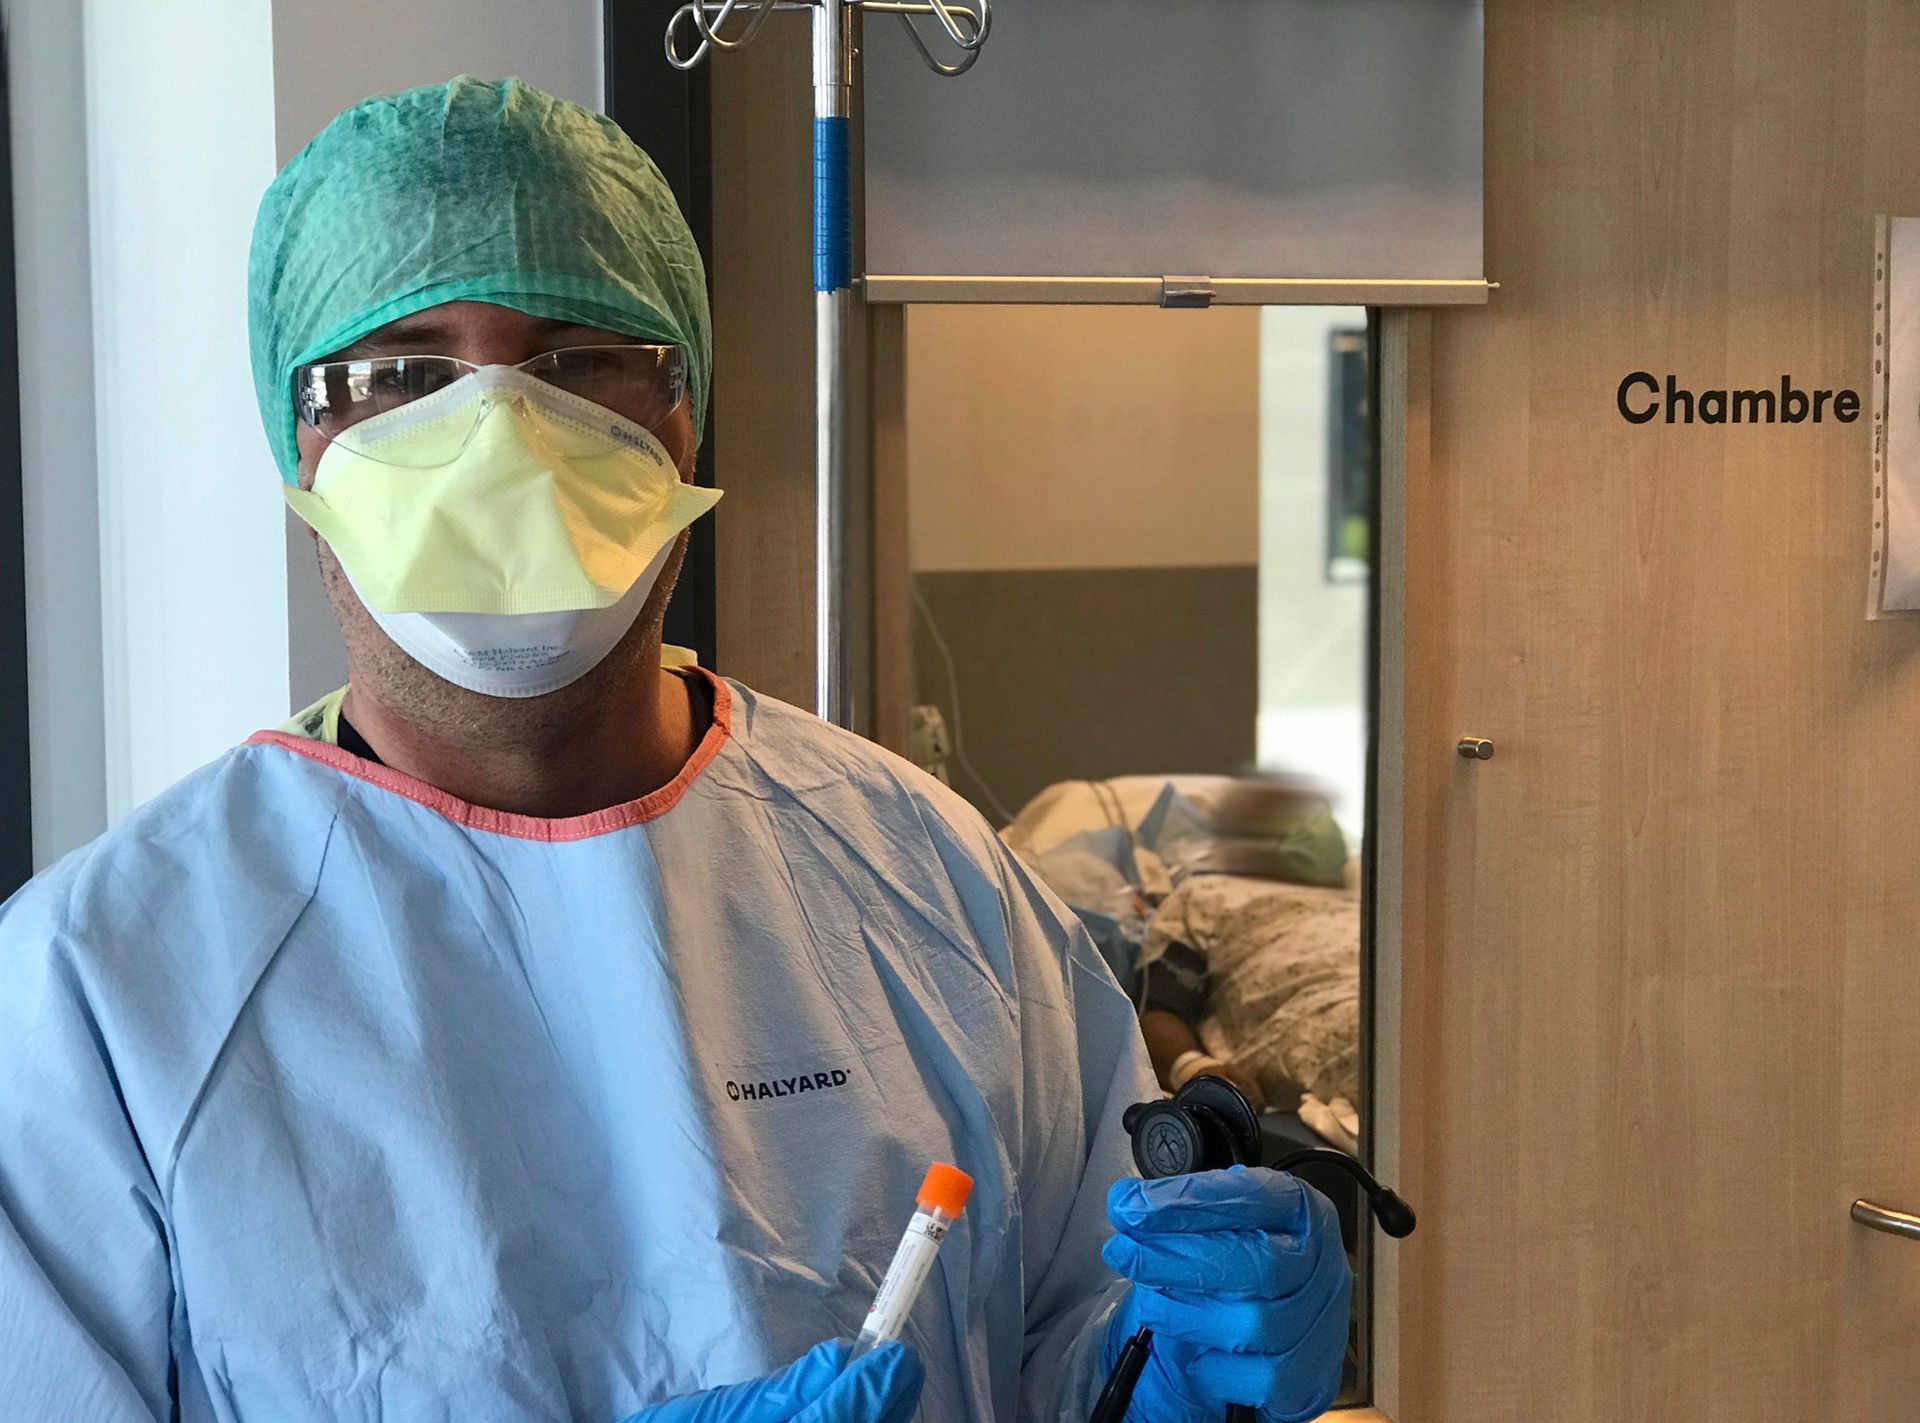 Christian Tarta Radu, médecin urgentiste au CHC de Liège, va pratiquer un test de dépistage du Coronavirus SARS-CoV2 sur un patient qui présente des symptômes suspects.